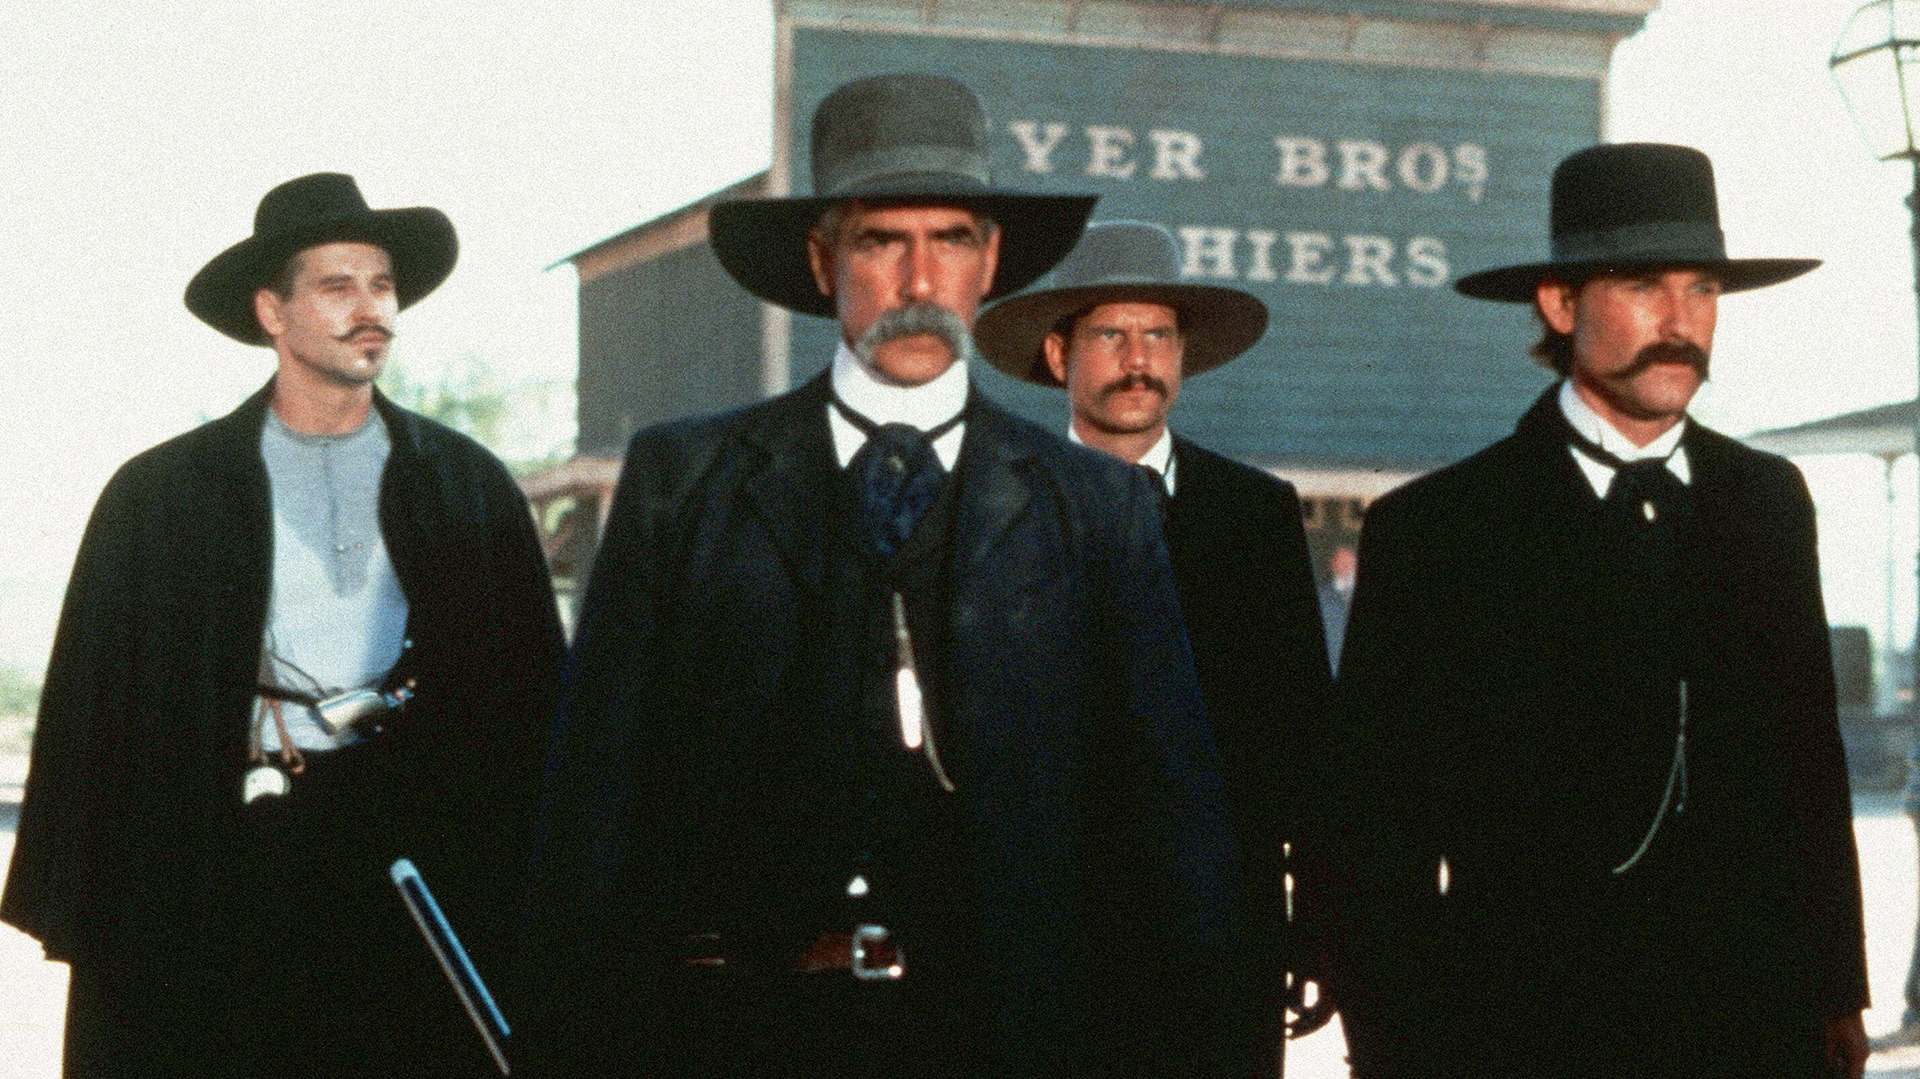 Four men in Wild West attire